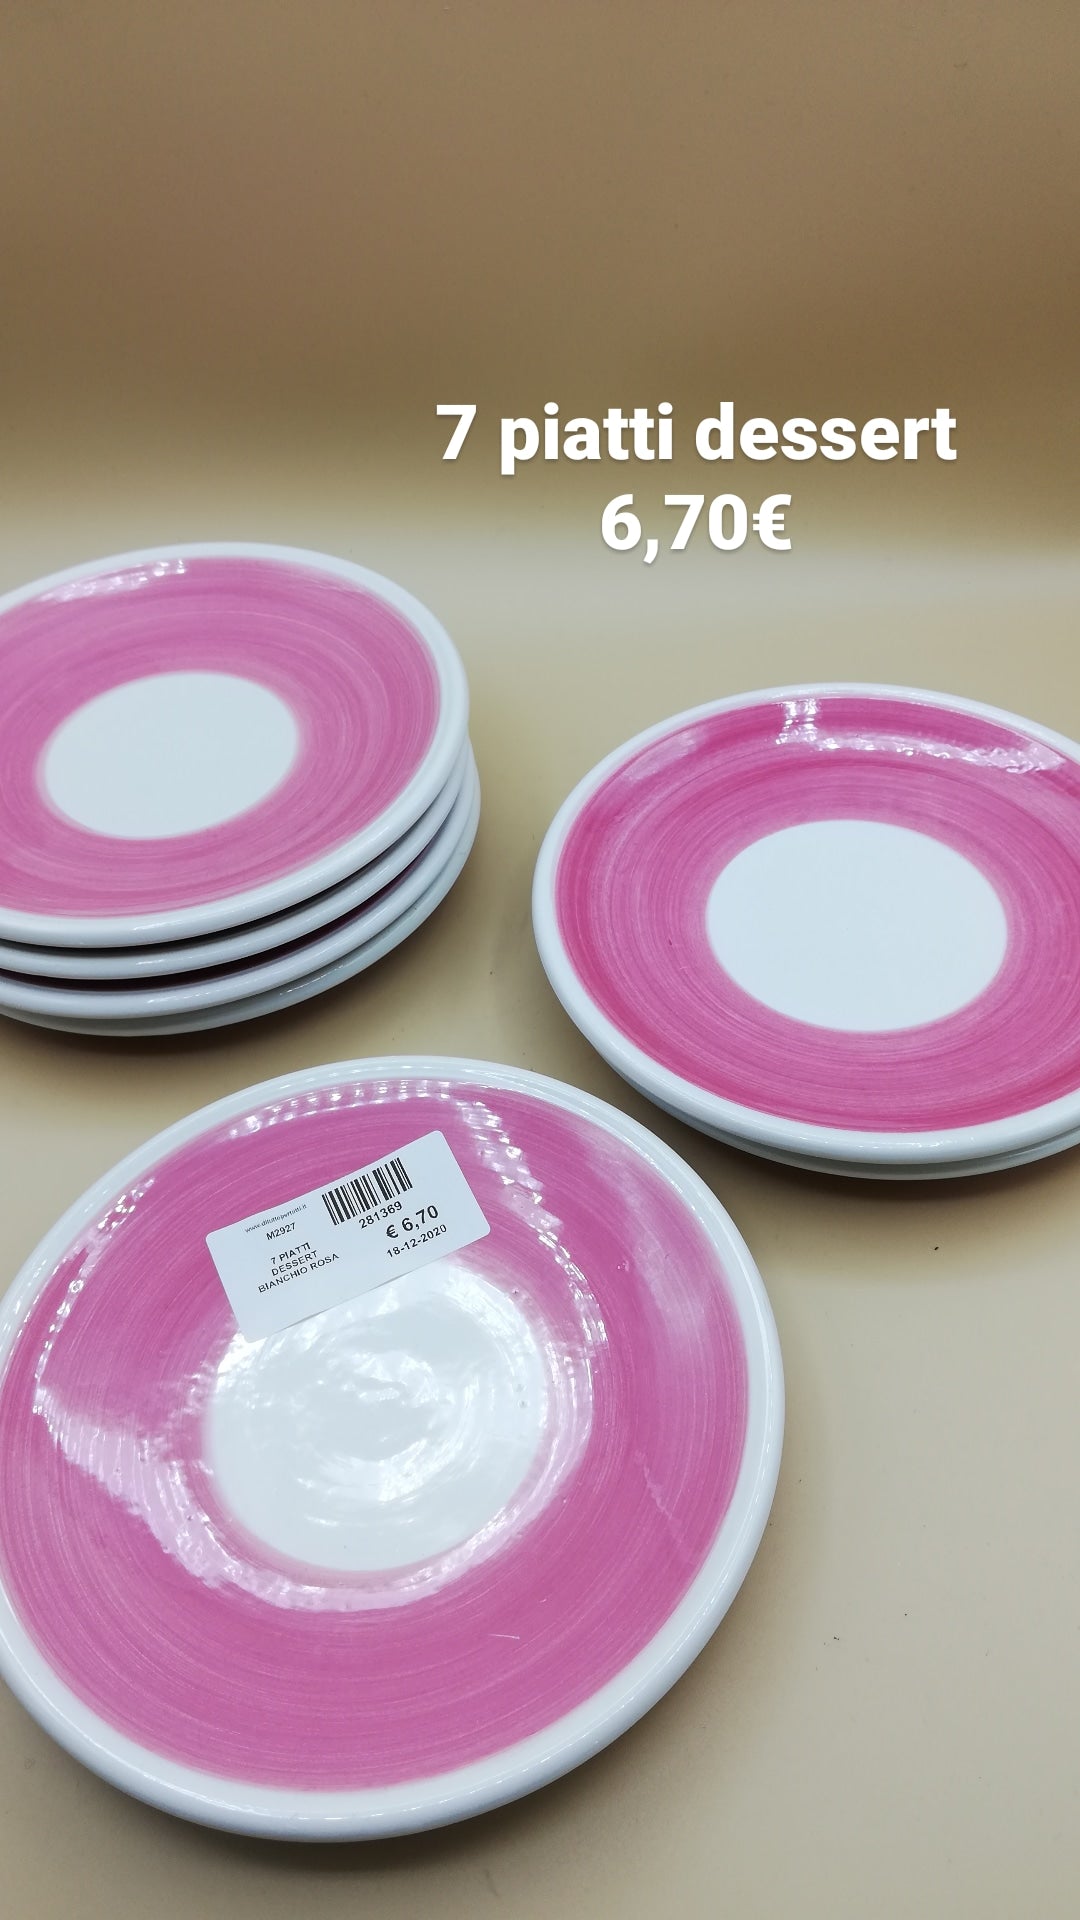 7 piatti dessert bianchi rosa